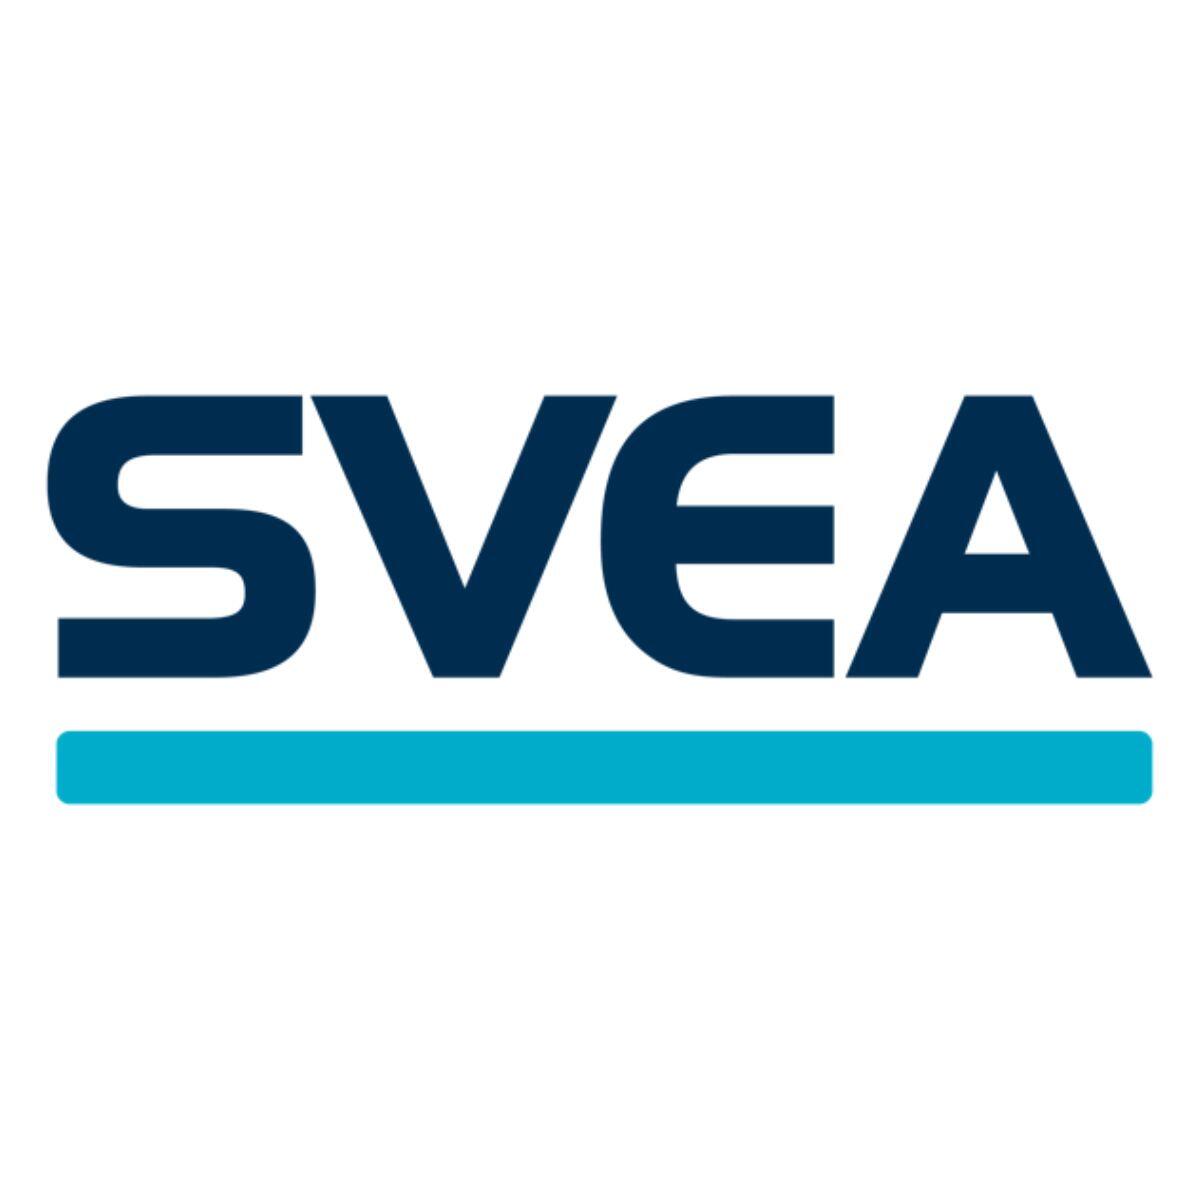 svea logo square